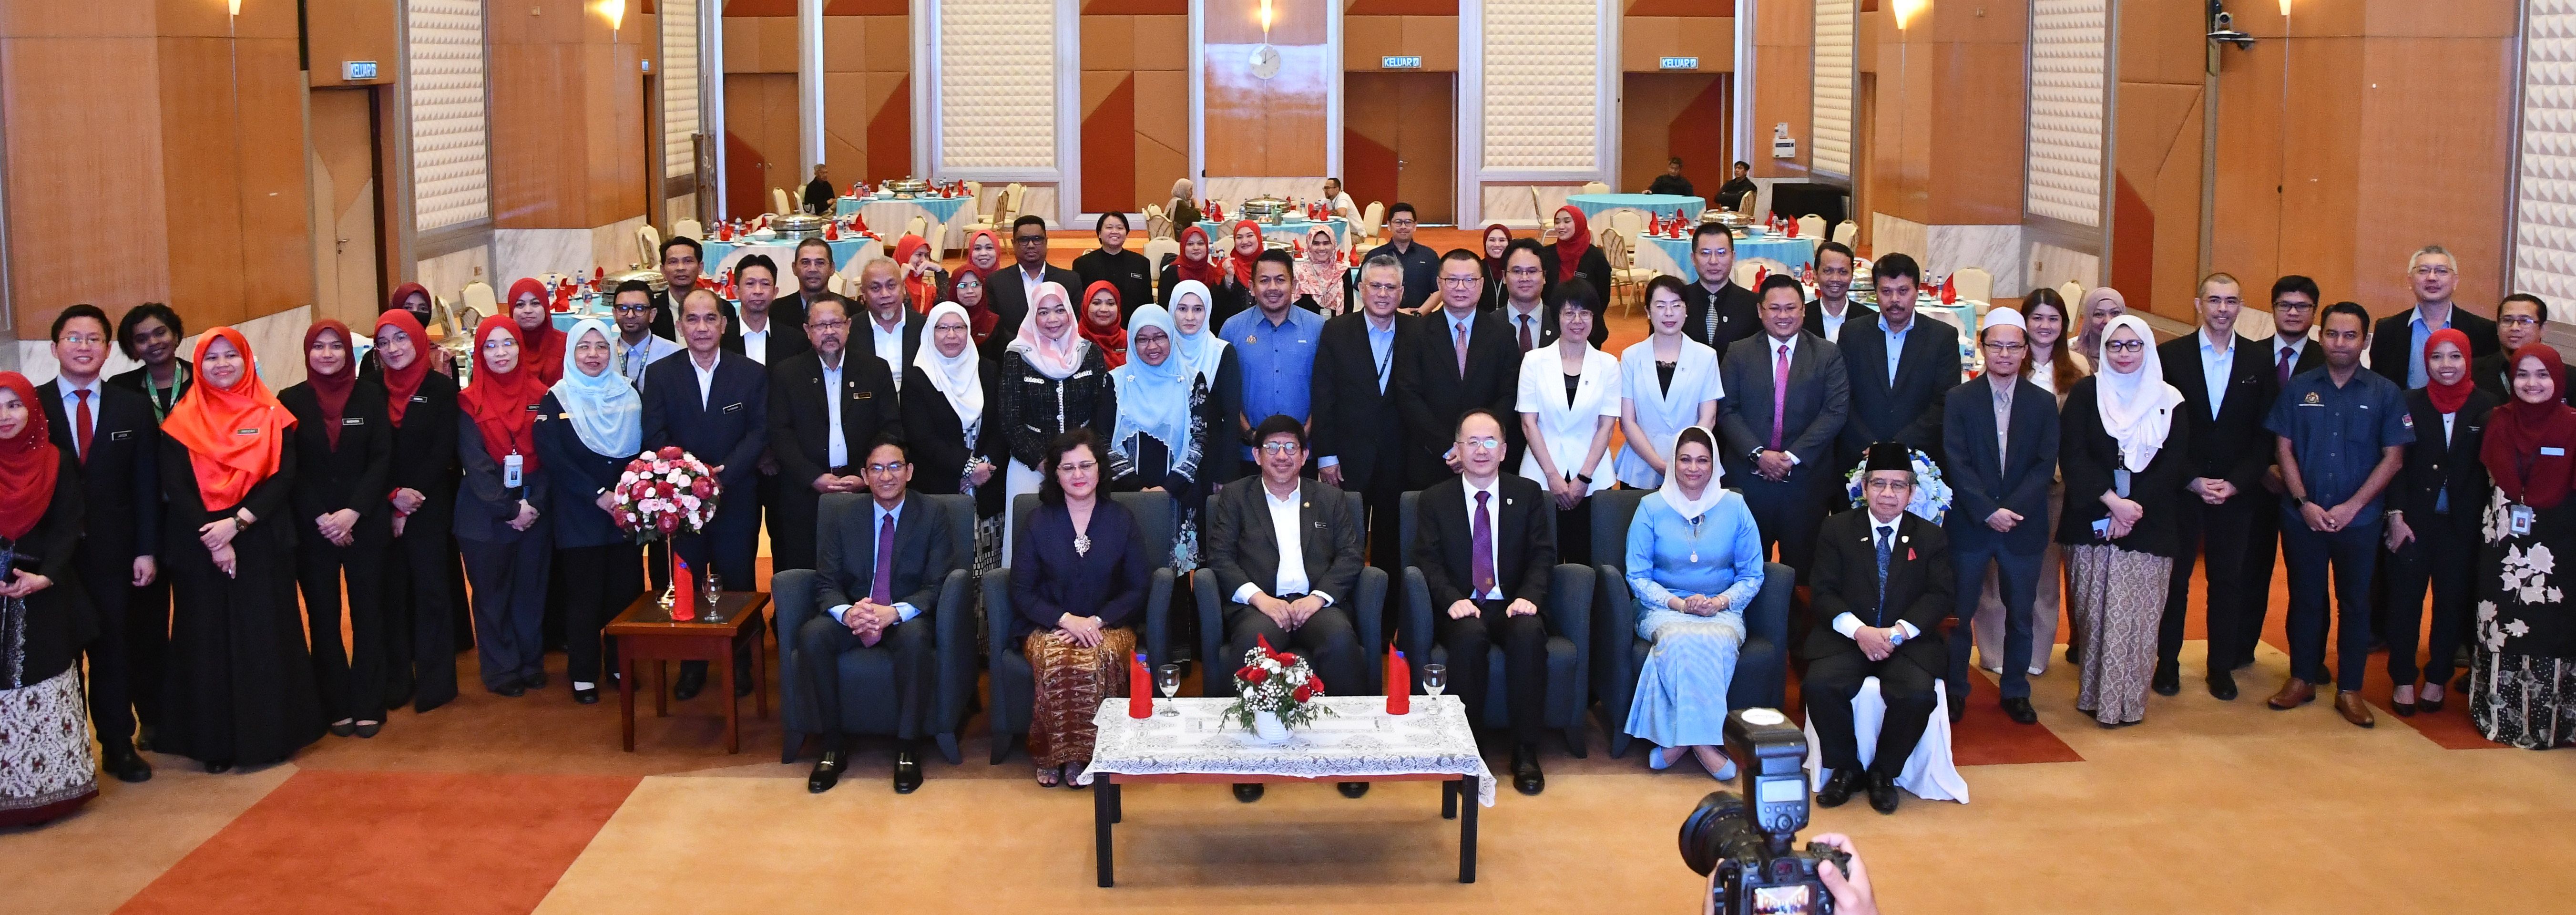 USM-BFSU Meterai MoU: Usaha Memperkasa Bahasa Melayu Di Peringkat Antarabangsa